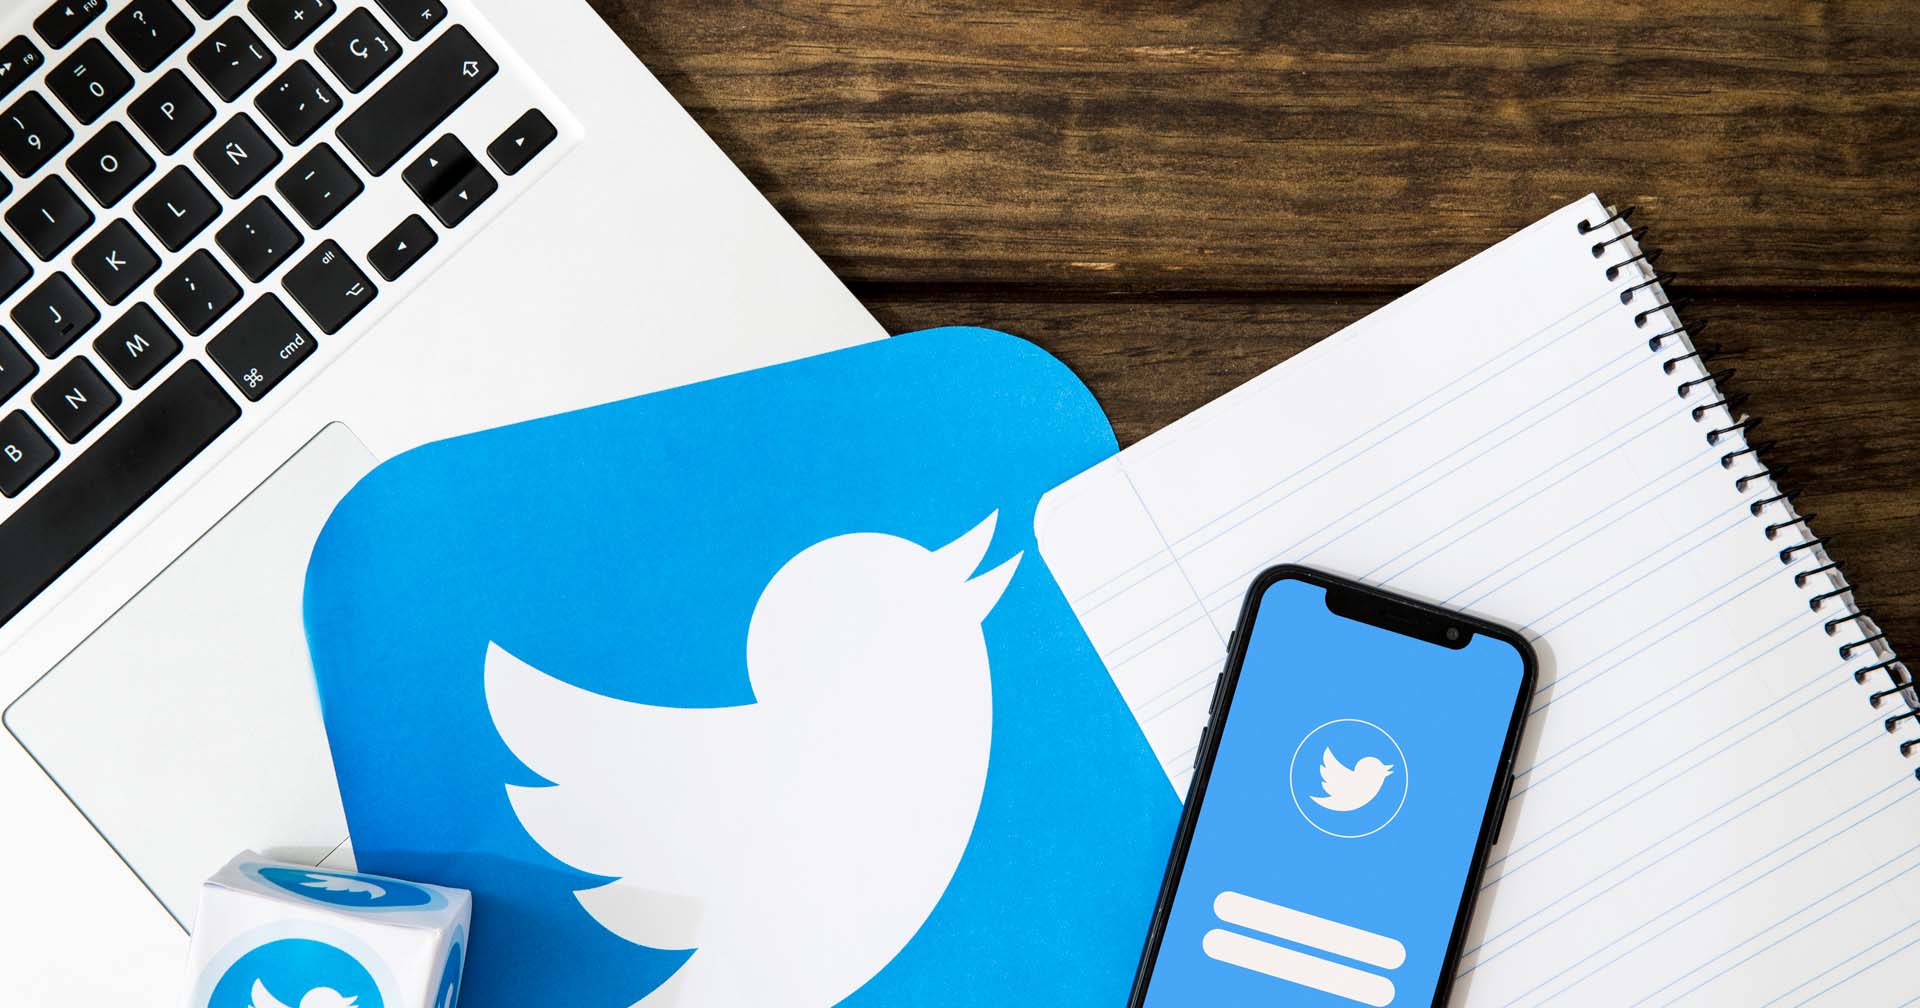 Twitter ปลดพนักงานที่มีสัญญาจ้างอีก 5,000 คนโดยไม่แจ้งล่วงหน้า